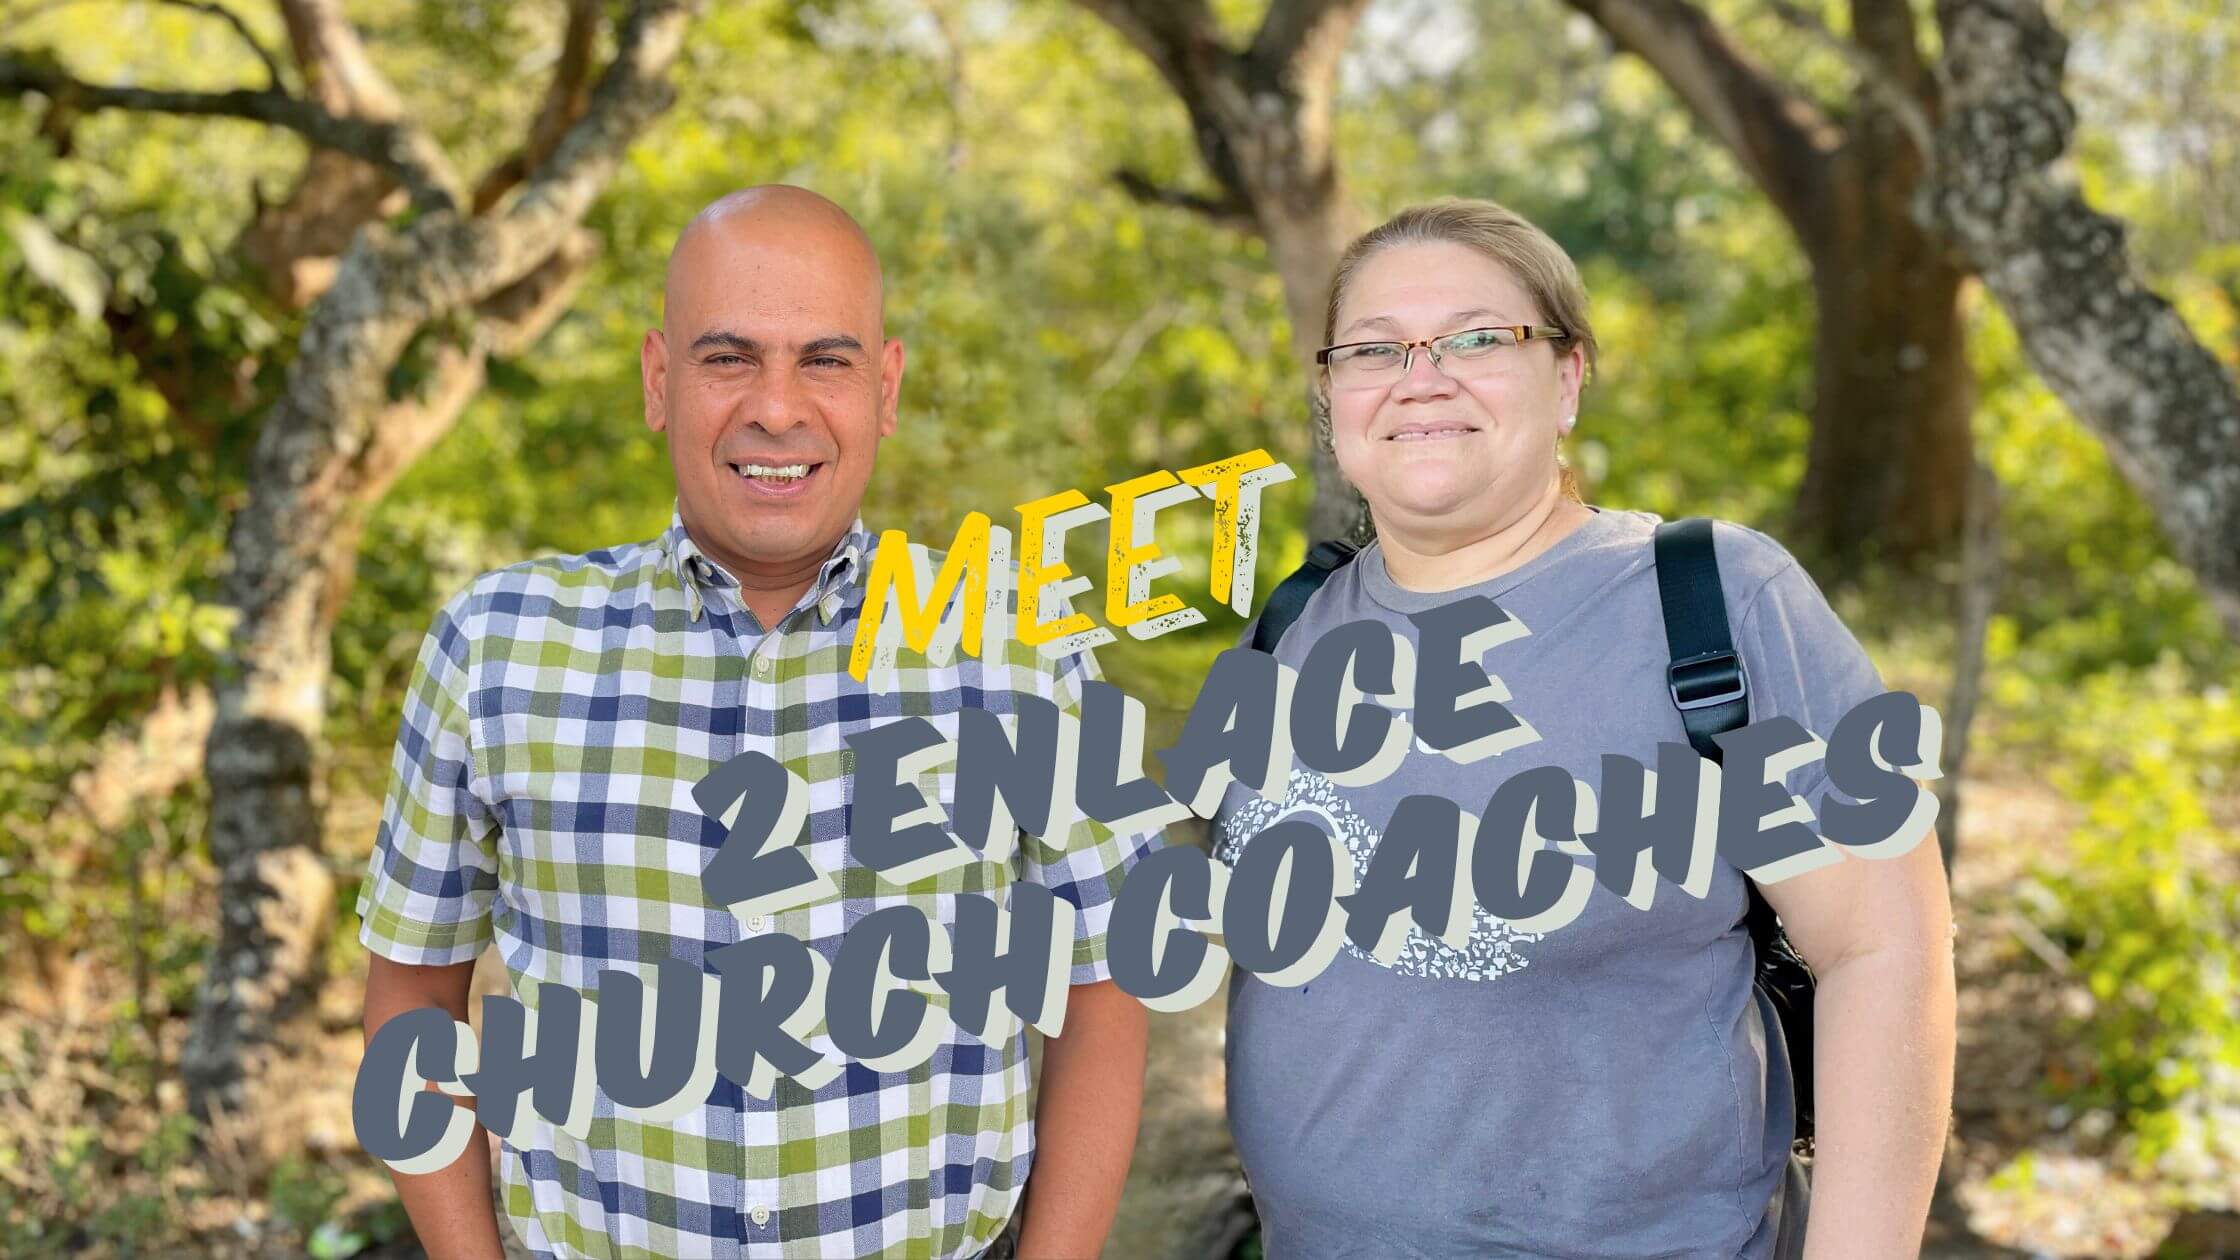 2 church coaches